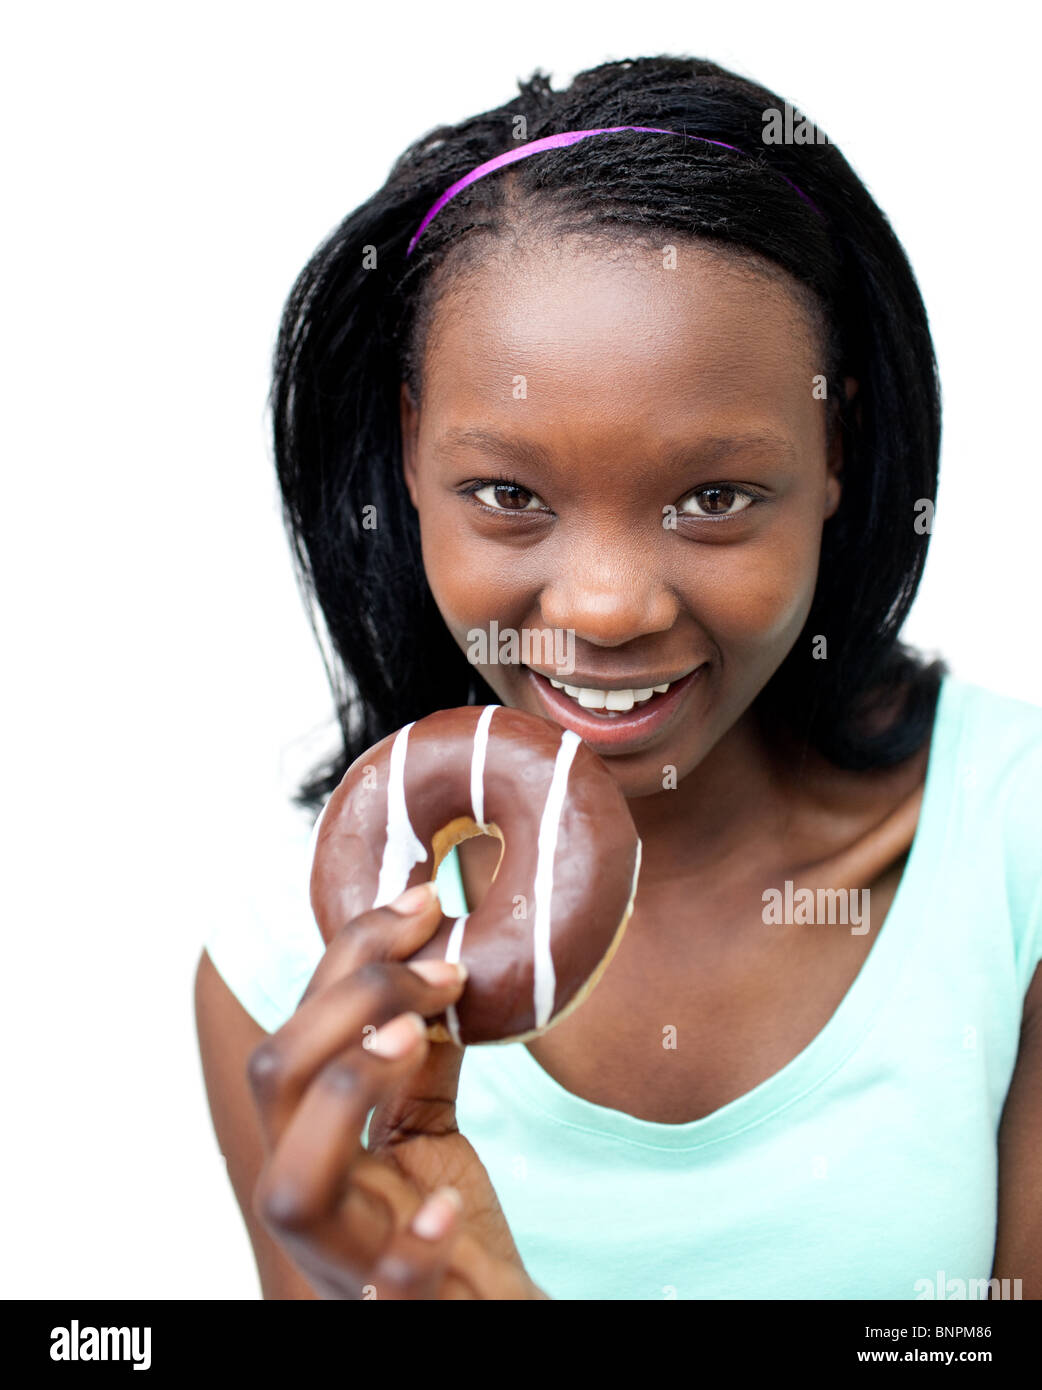 Негритянка ест. Негритянки едят. Чернокожая девушка есть пончик. Негритянка ест шоколад. Чернокожая кушает шоколад.